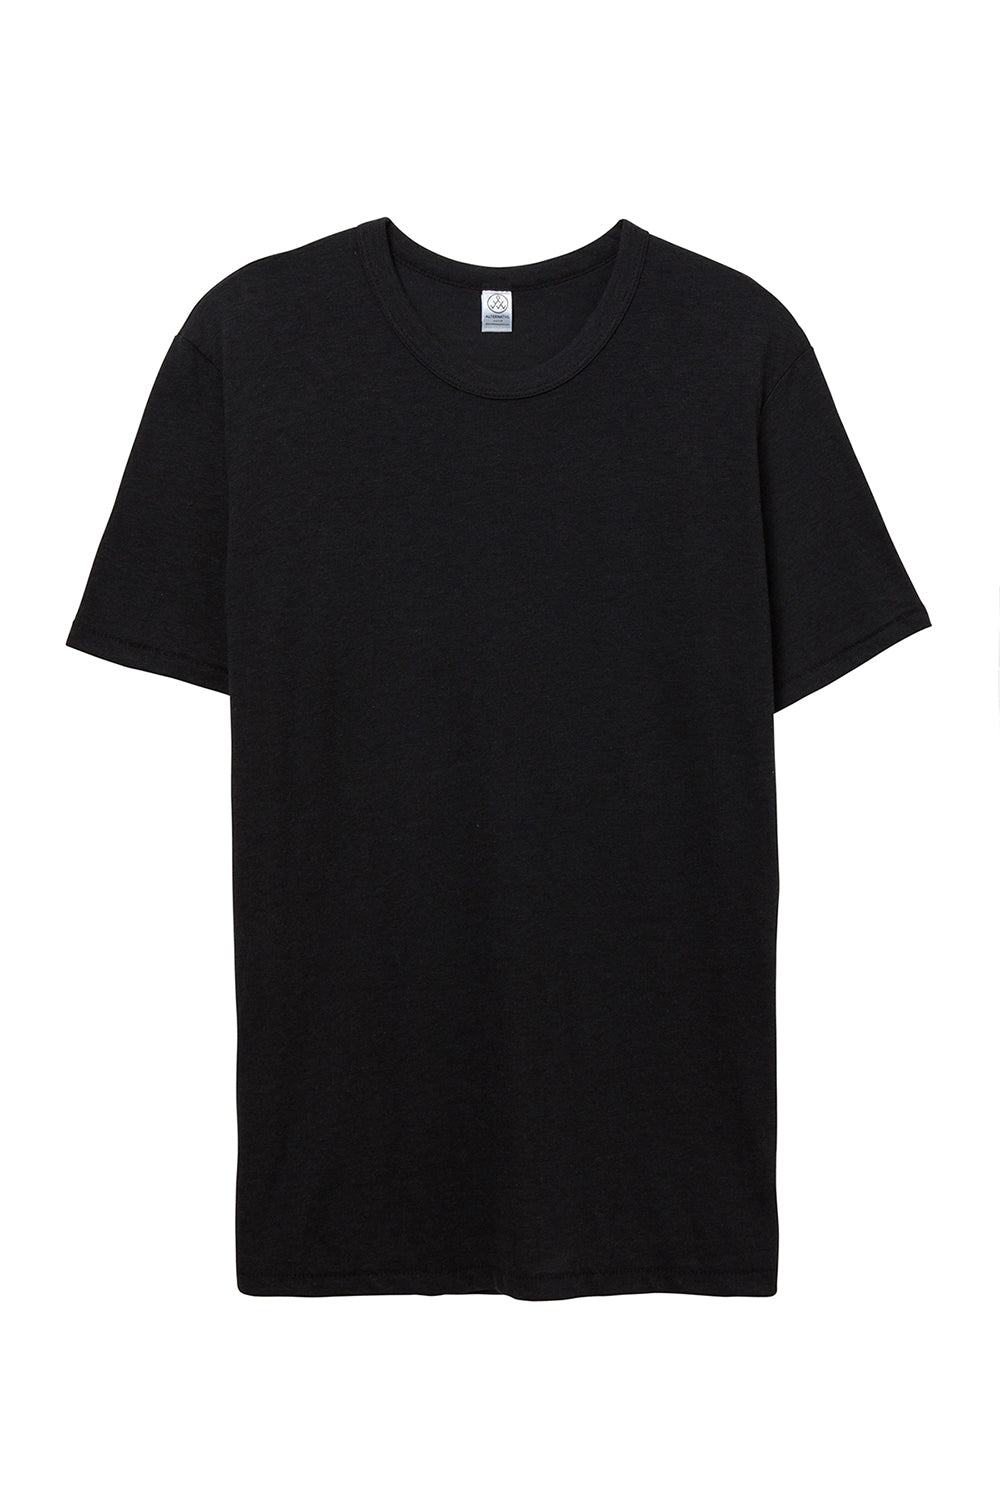 Alternative AA1973/01973EA/1973 Mens Eco Jersey Short Sleeve Crewneck T-Shirt Eco True Black Flat Front